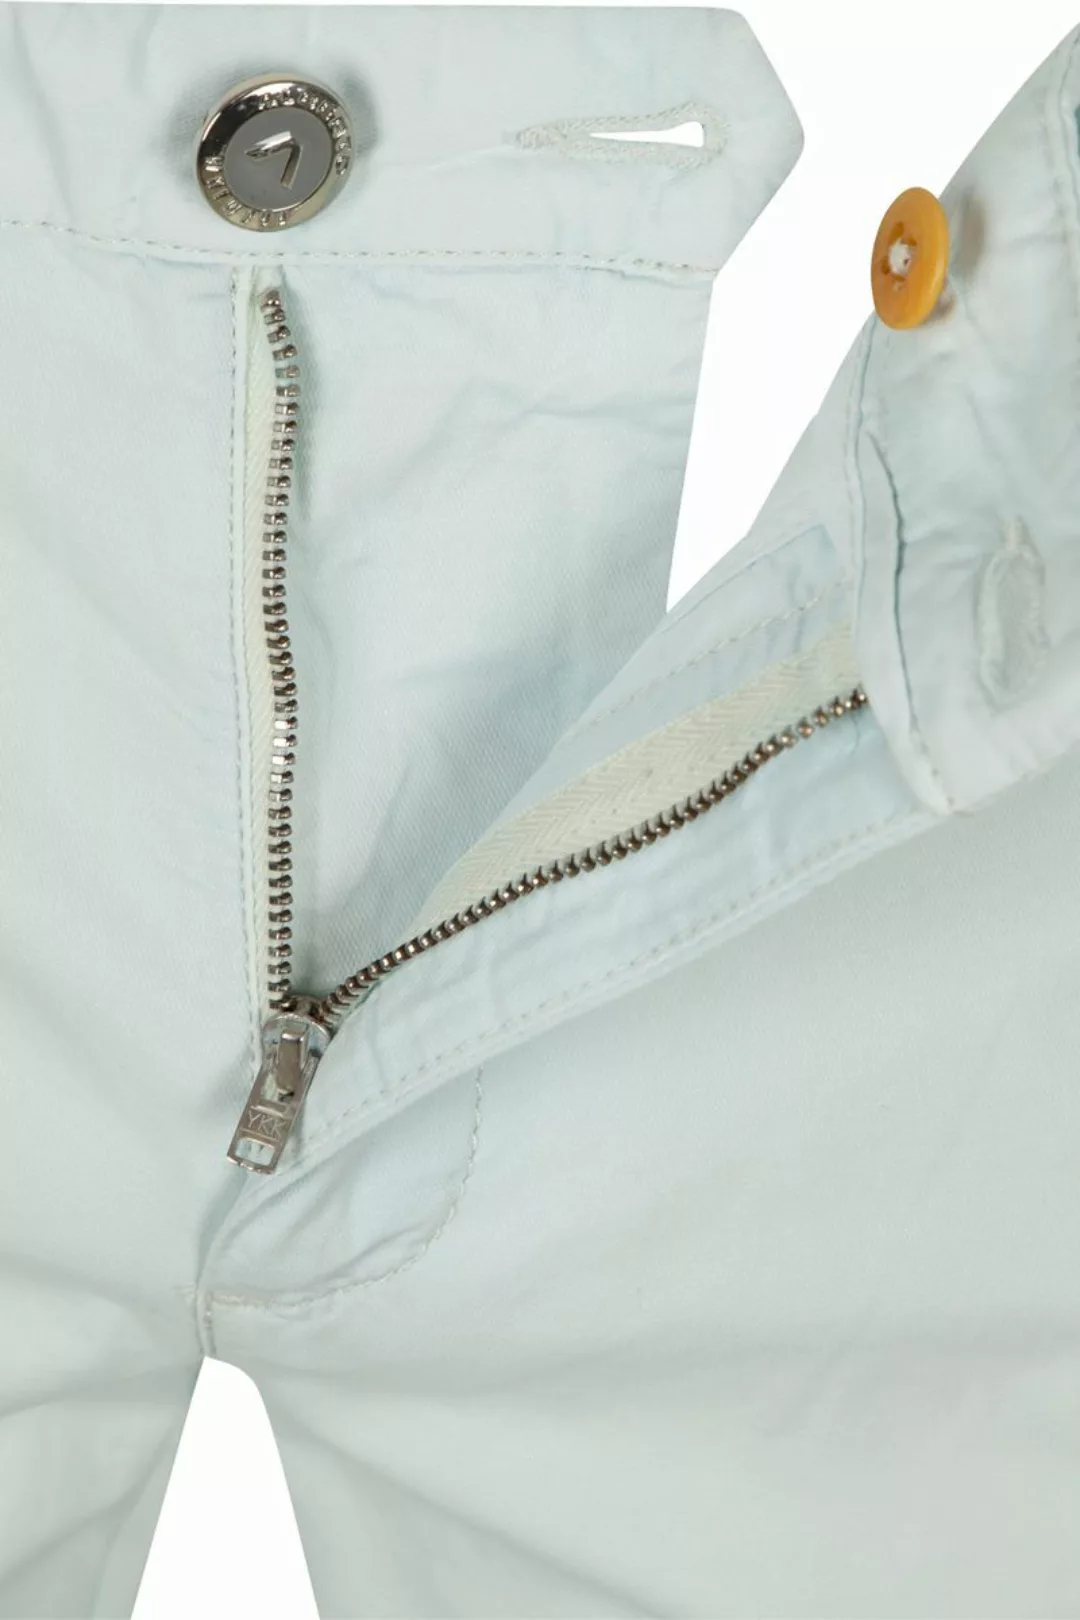 Alberto Chinohose Premium Cotton Rob Hellblau - Größe W 31 - L 34 günstig online kaufen